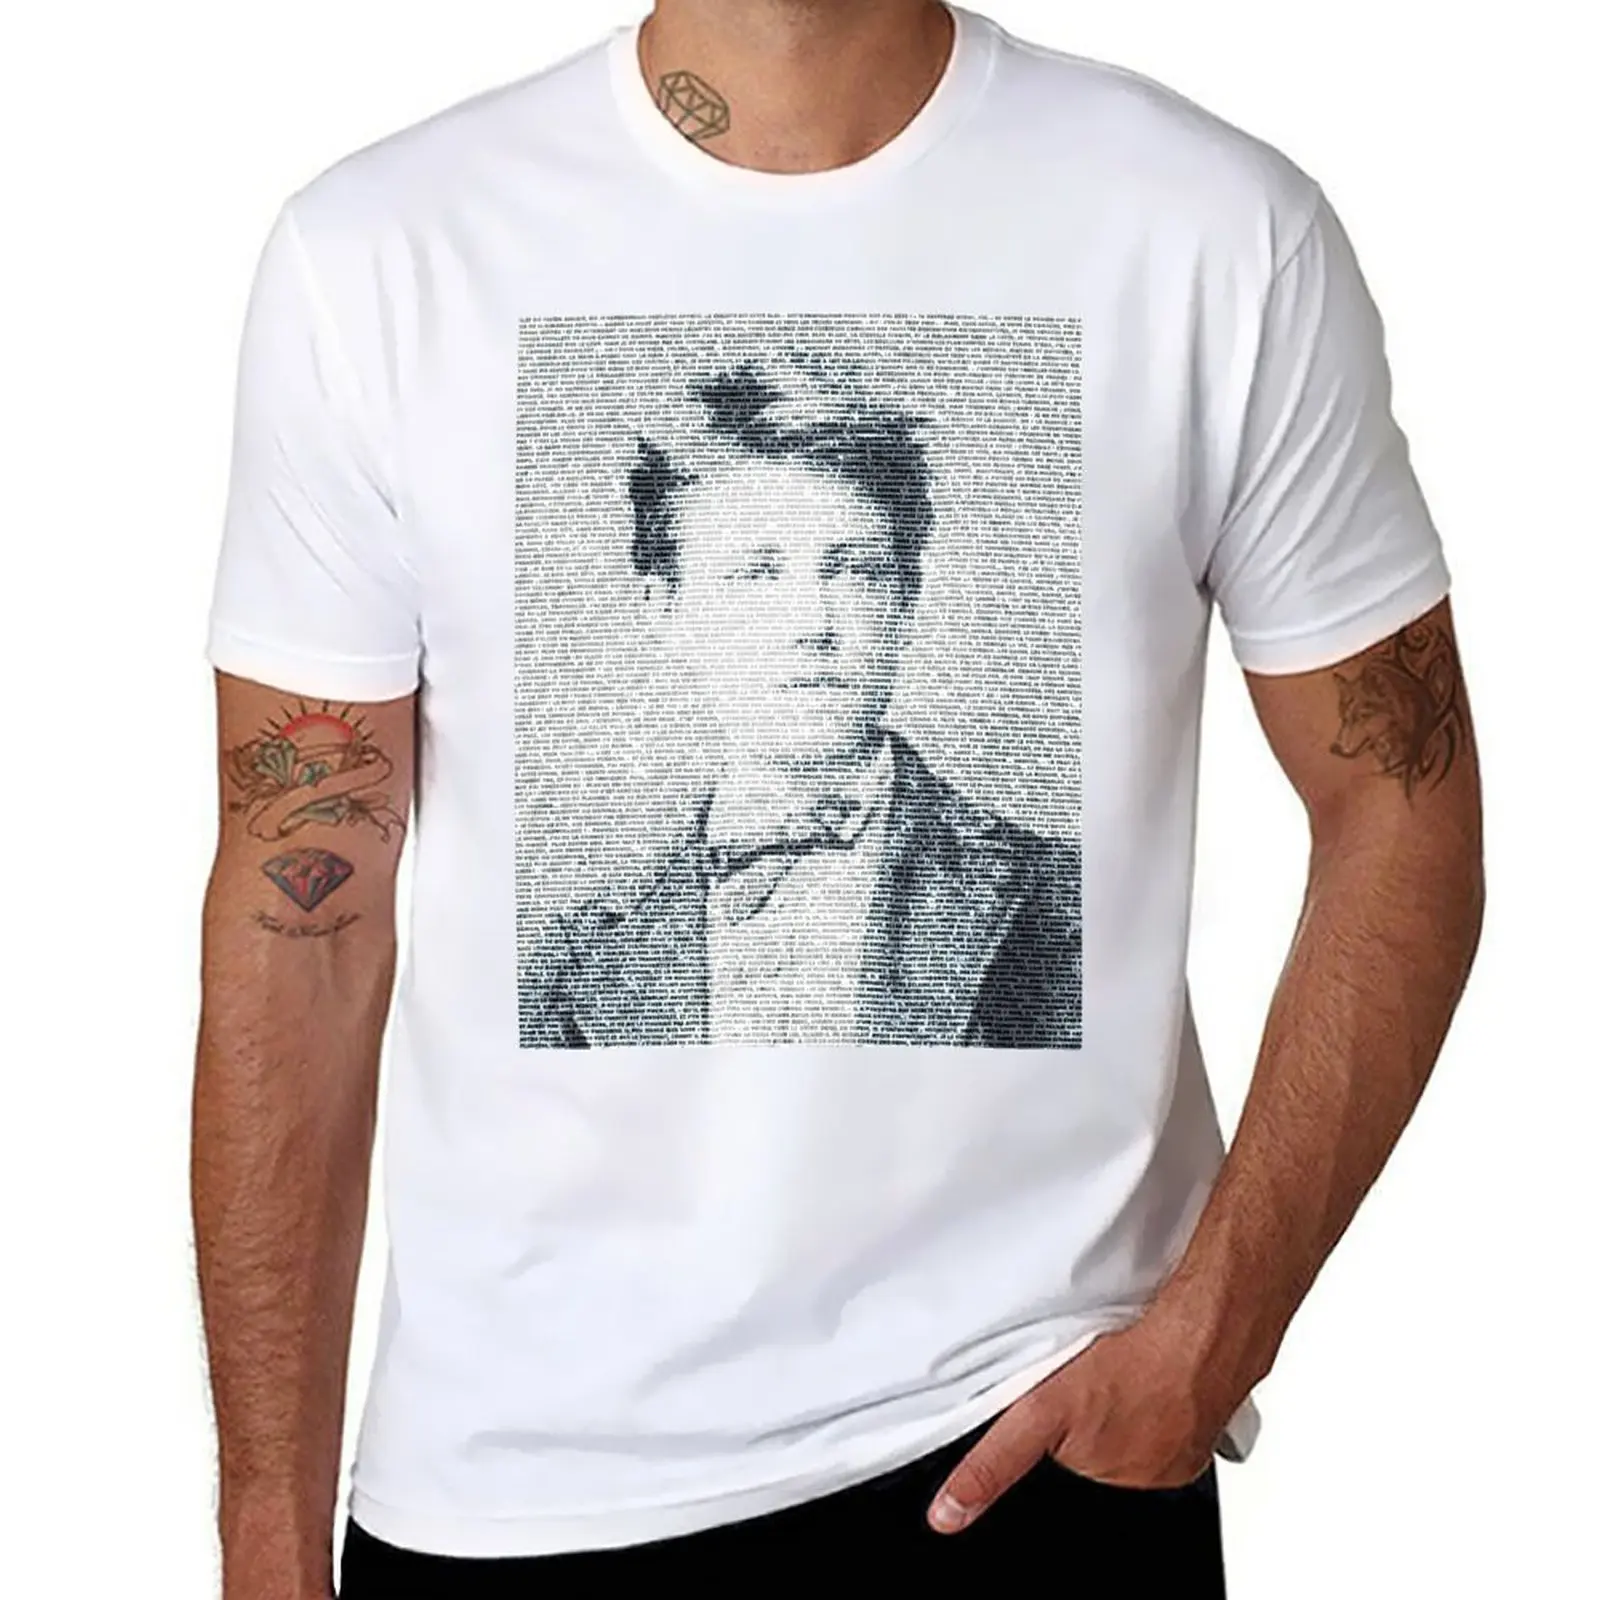 Артур Рембо, величайший французский поэт, нарисованный по тексту его футболки Season in hell, изготовленной на заказ футболки для мужчин из хлопка